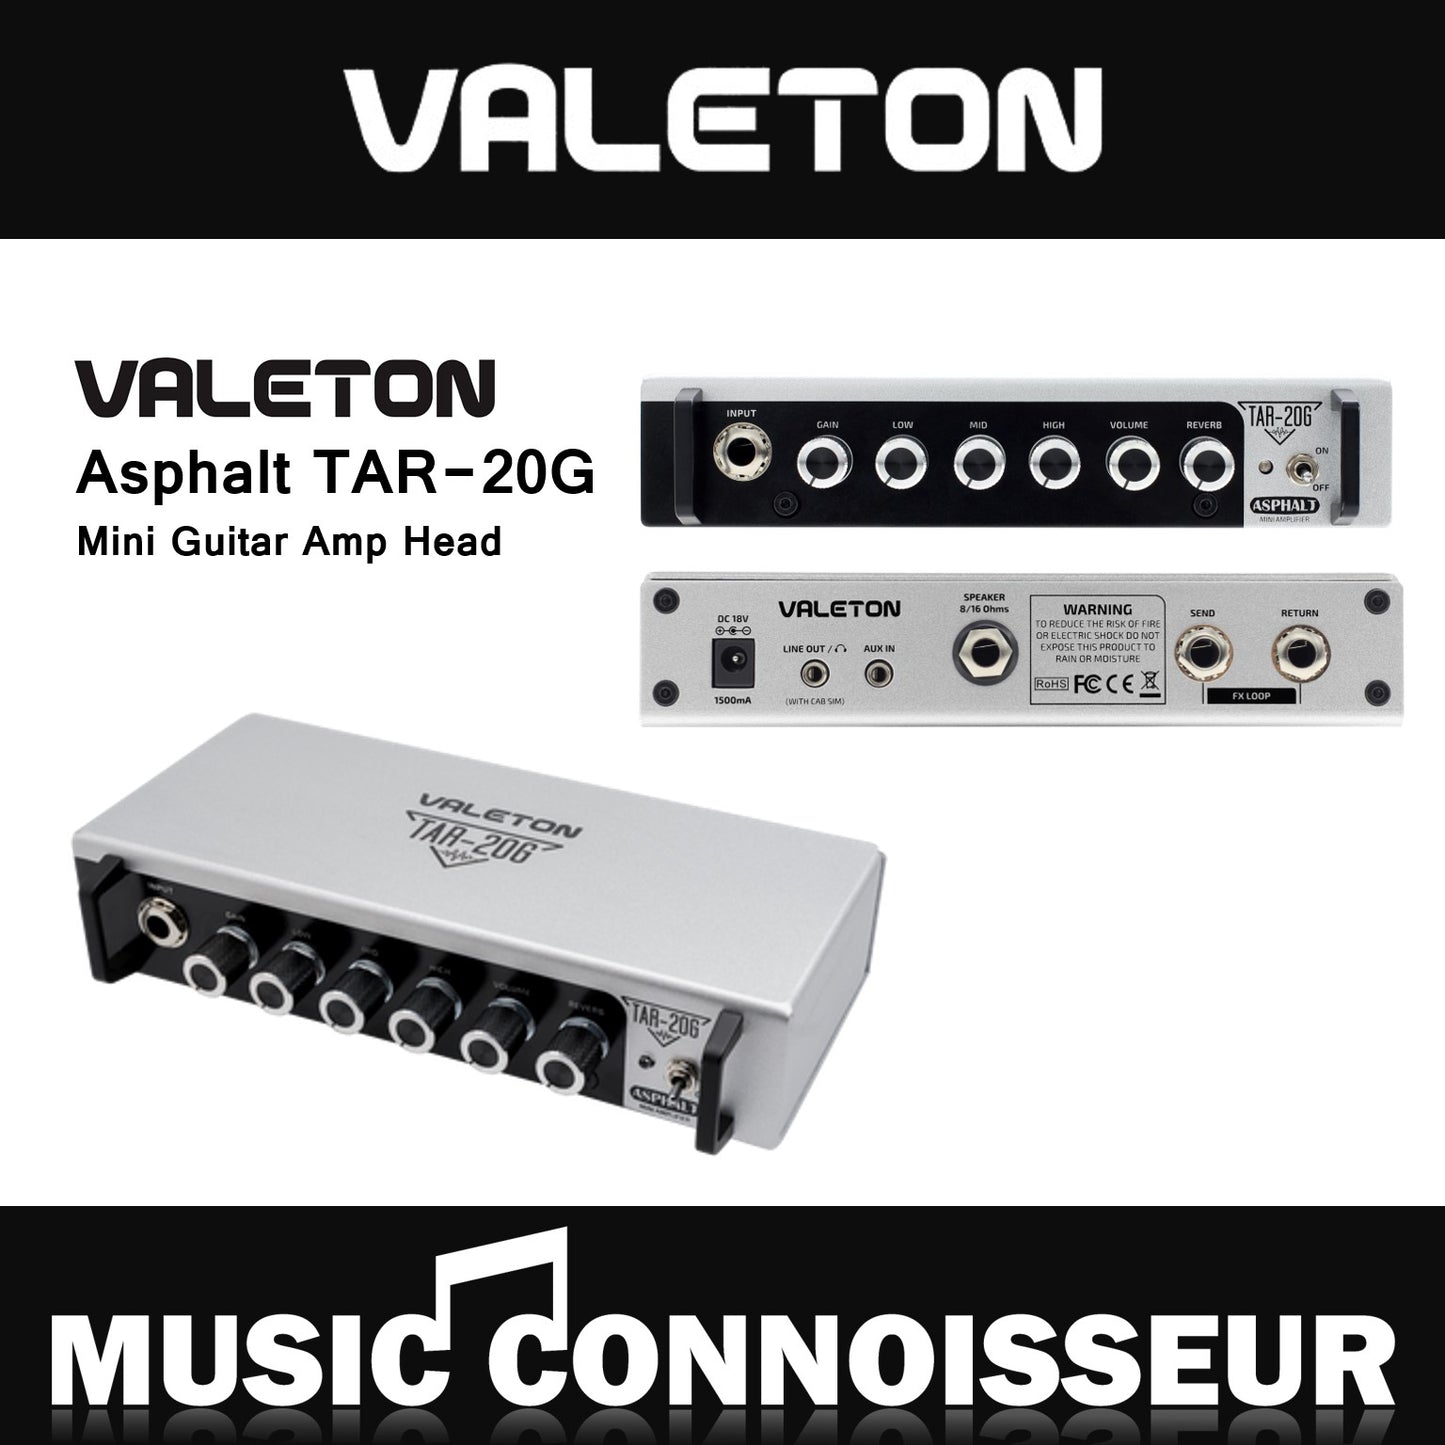 Valeton Asphalt TAR-20G Mini Guitar Amp